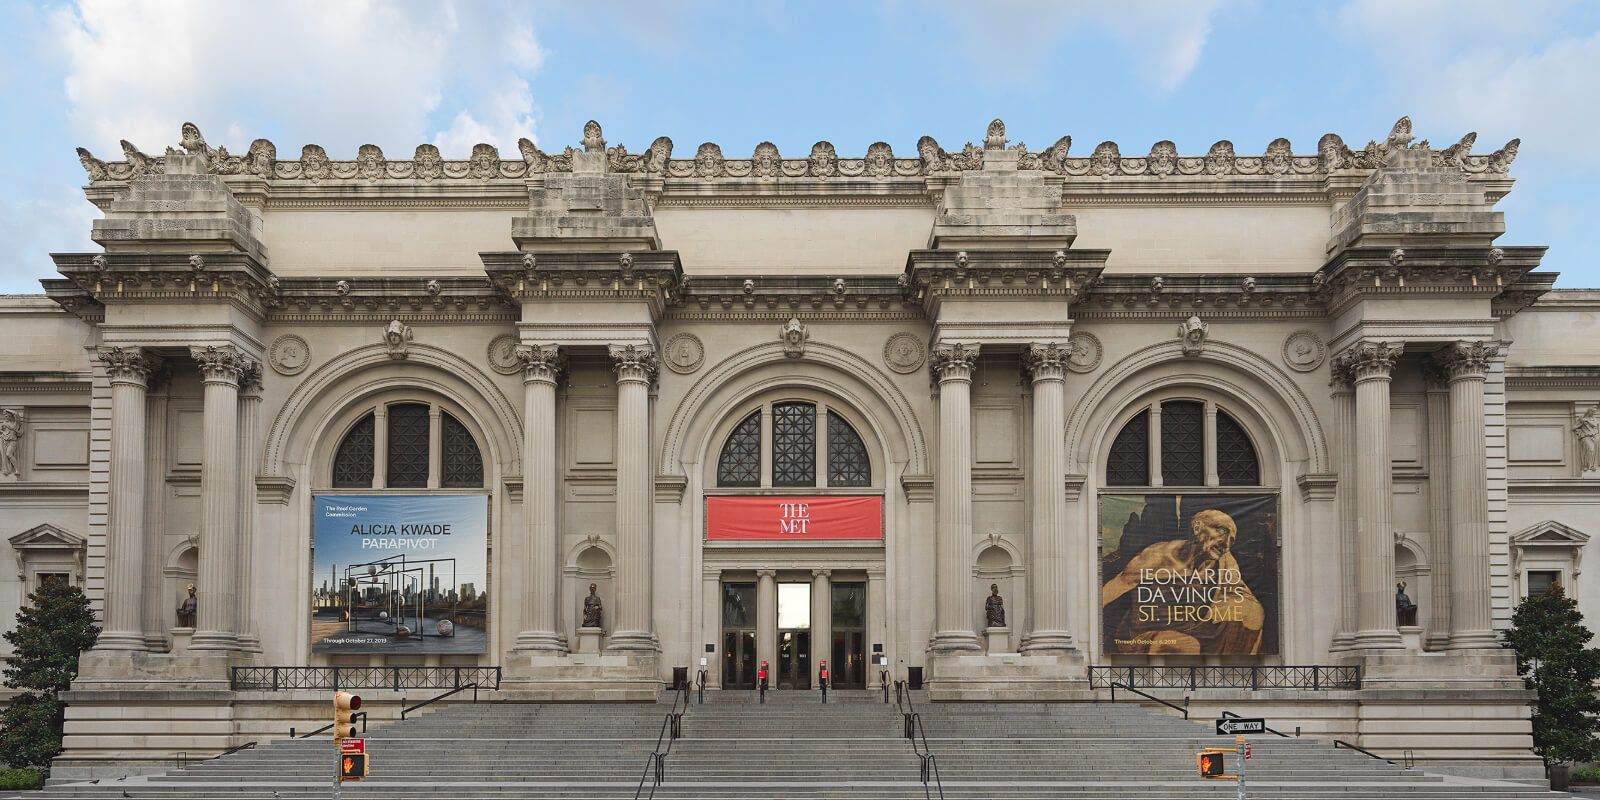 The Metropolitan Museum of Art “The Met”